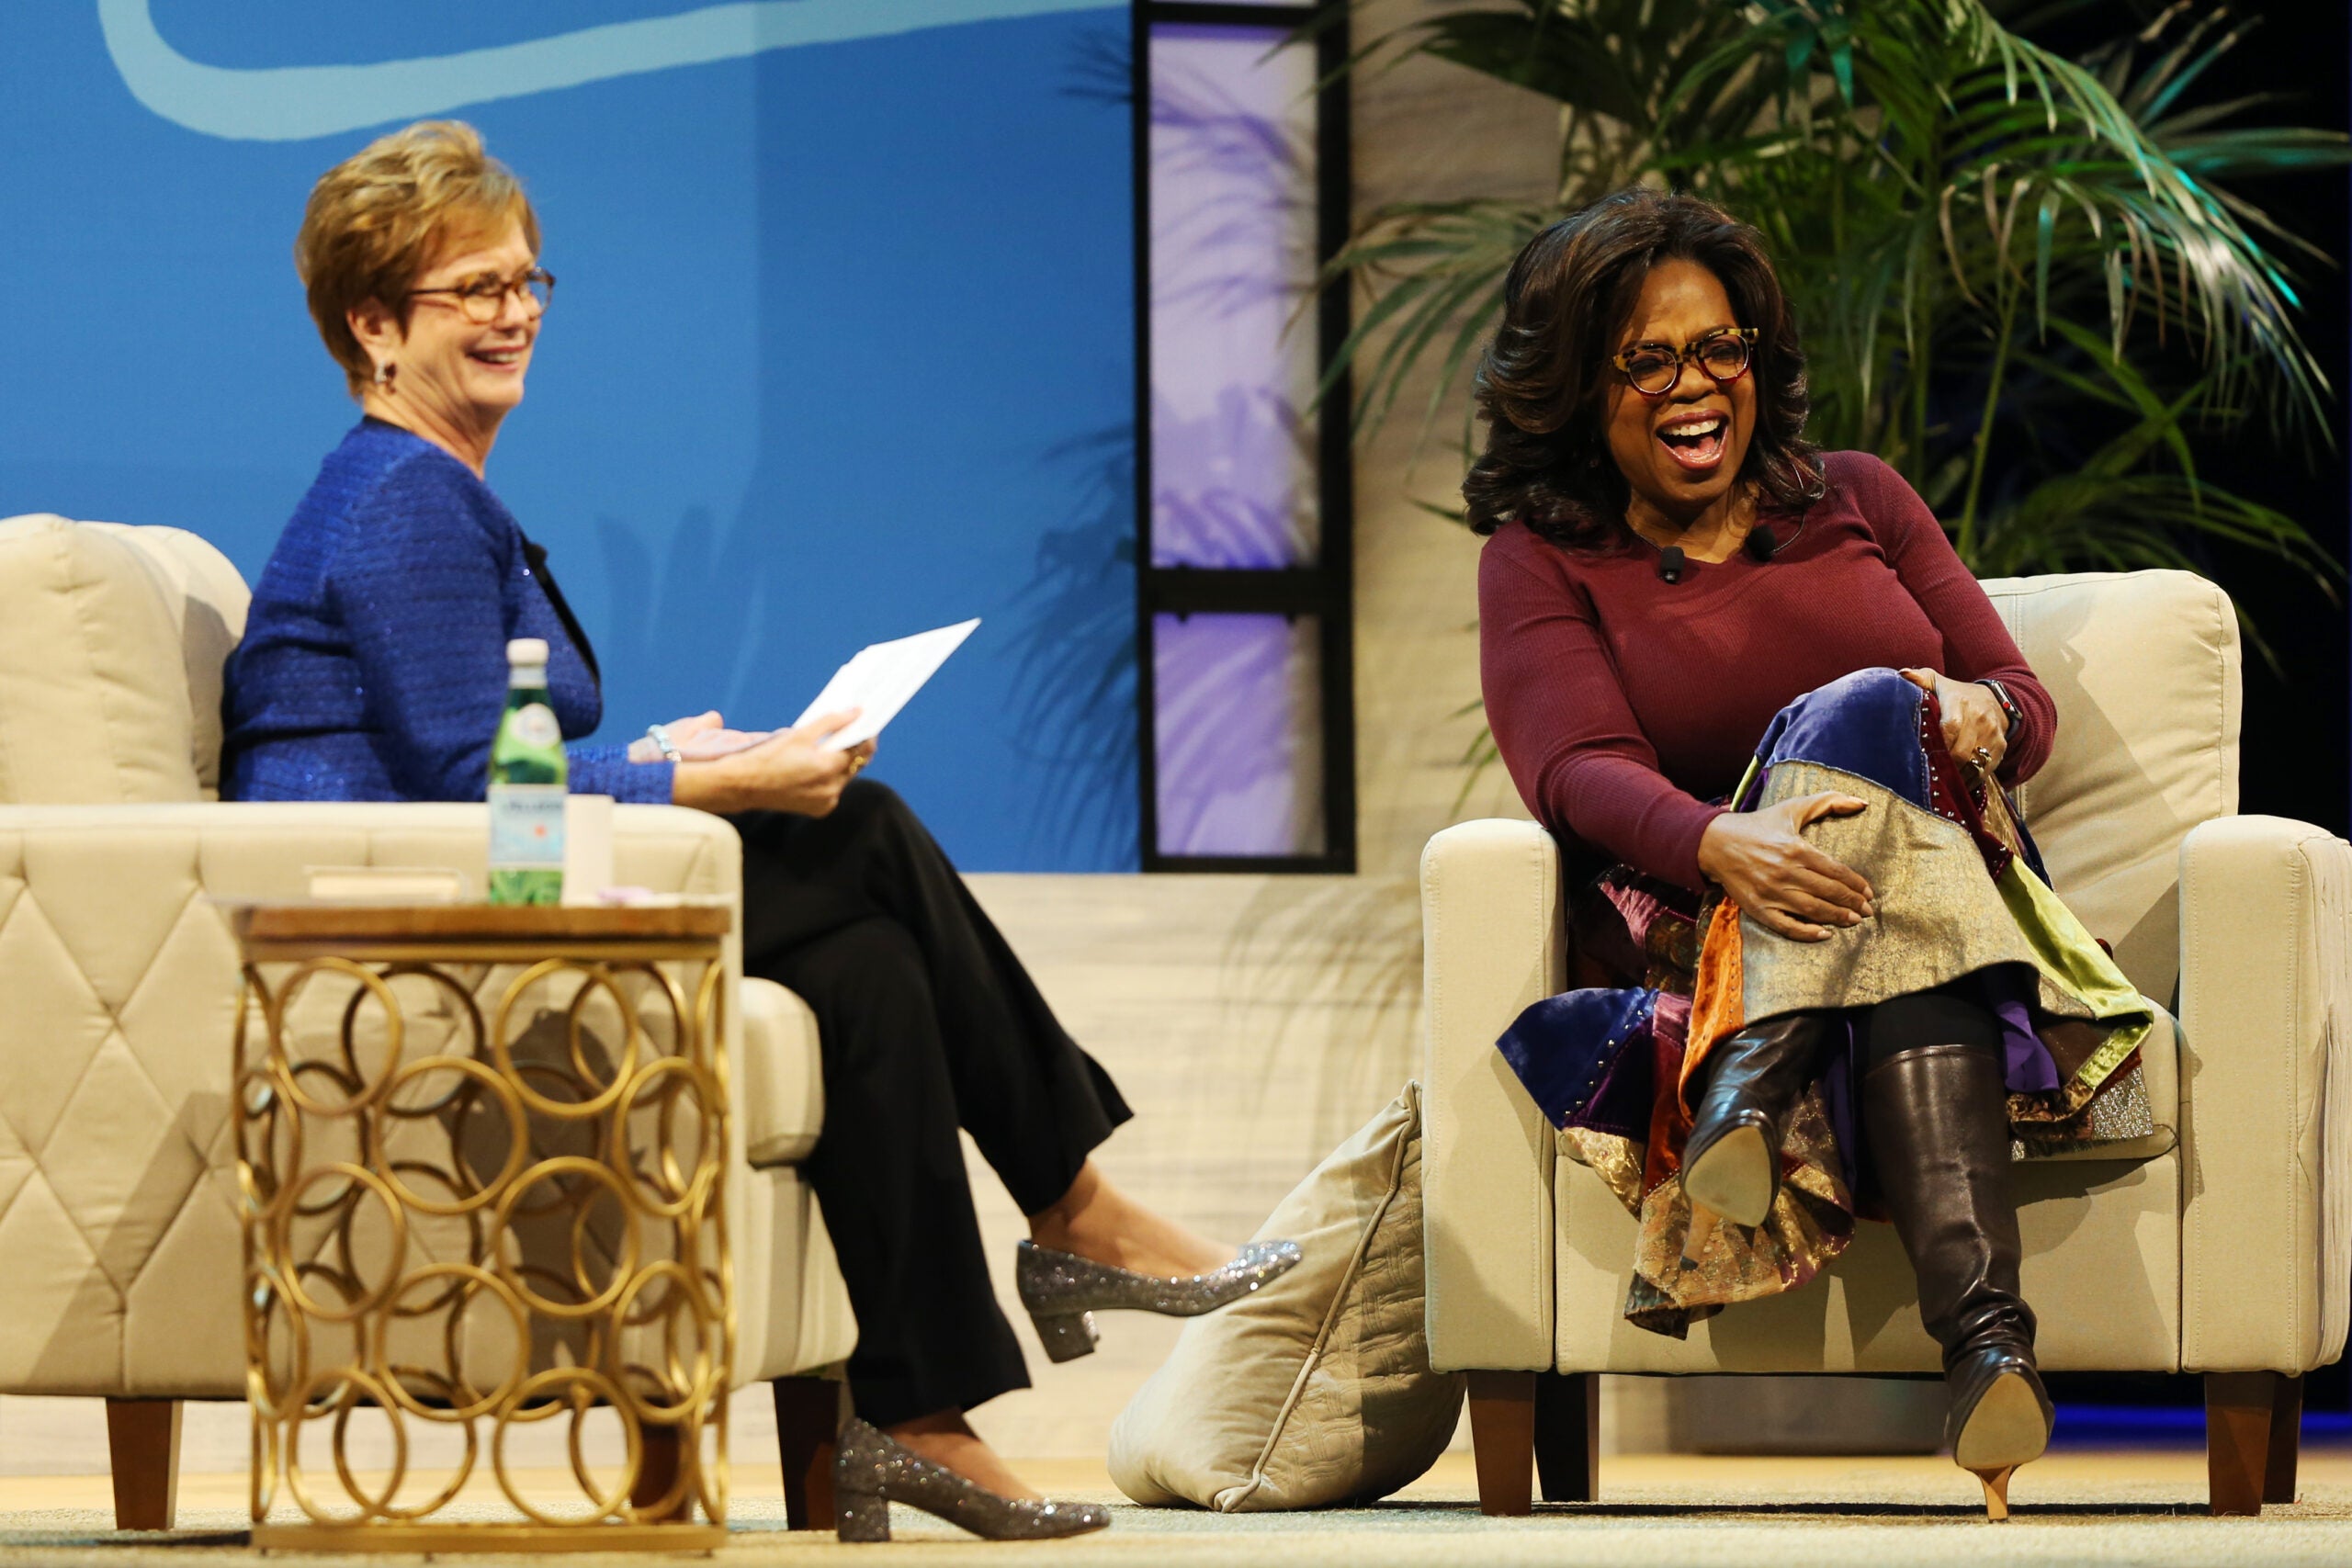 Oprah Winfrey raises more than 3 million for UMass Lowell scholarships